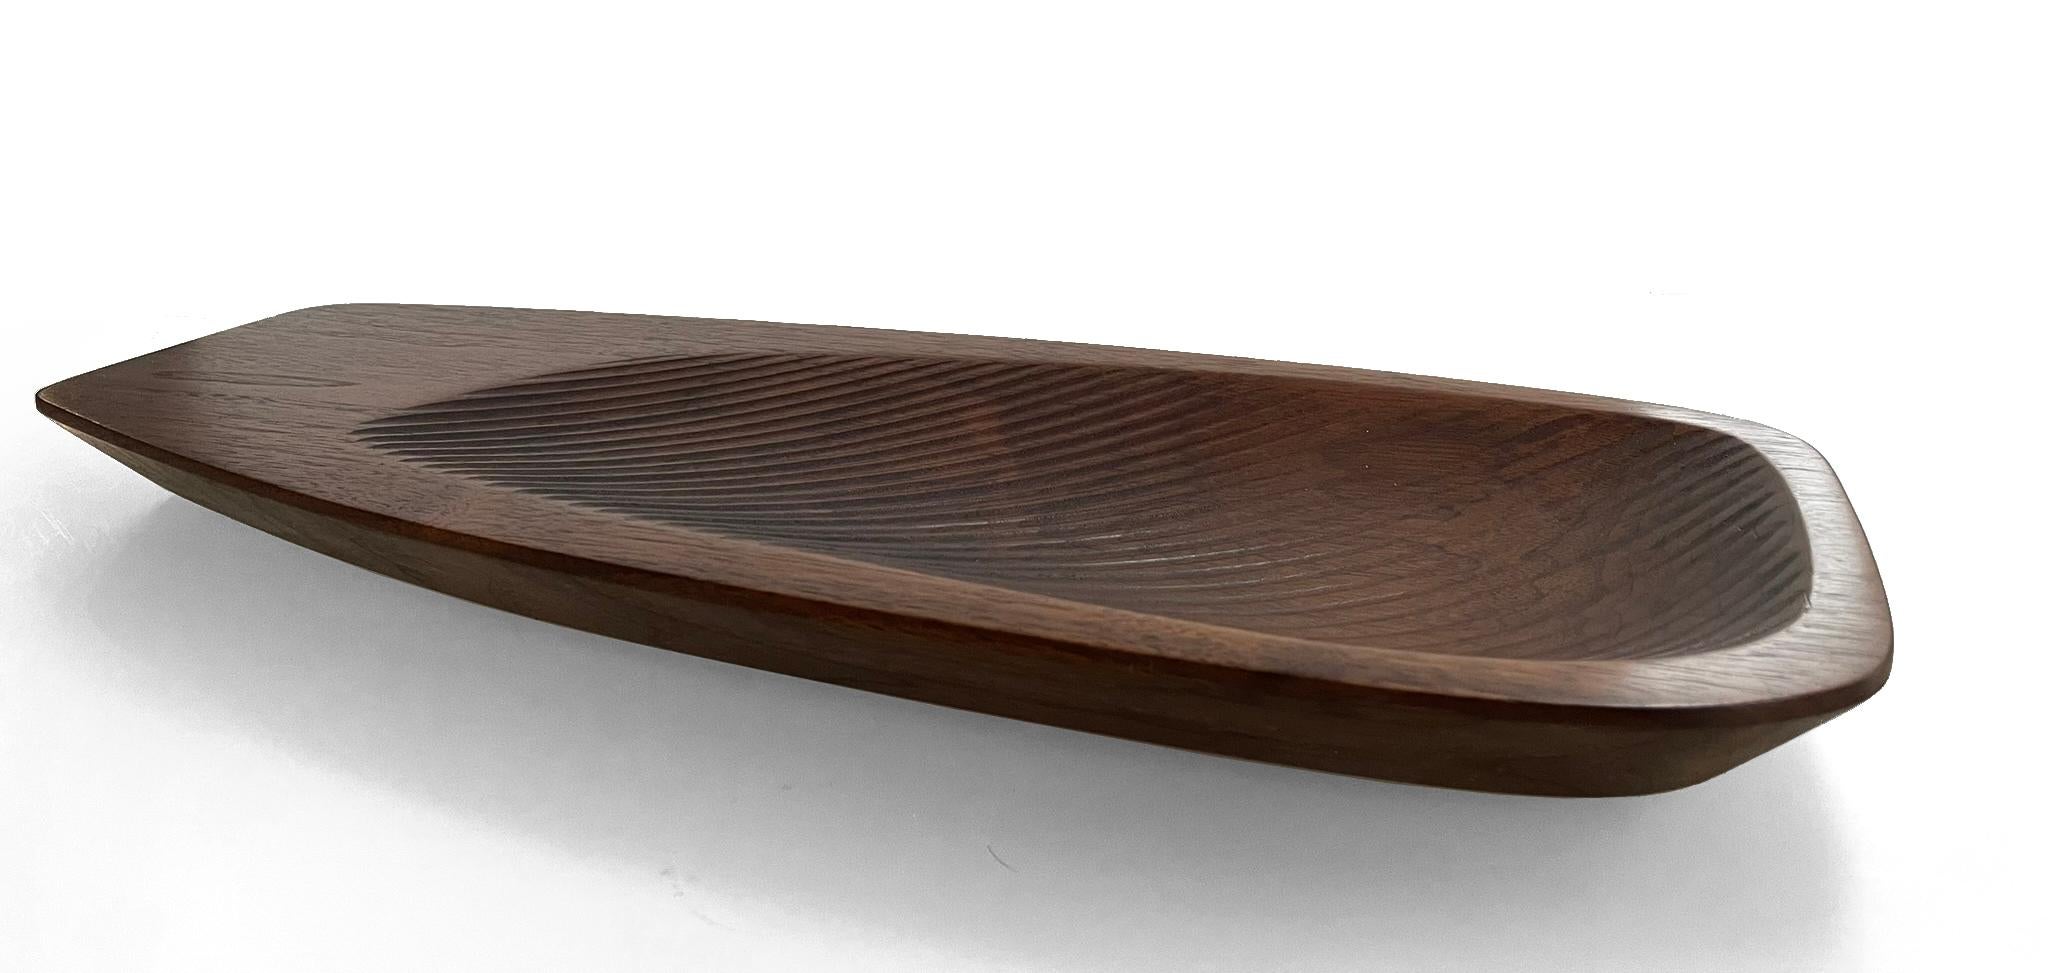 Diese dekorative Schale aus Nussbaumholz kann als Dienerschale oder als Tischdekoration verwendet werden. Der Valas ist nach dem finnischen Wort für 